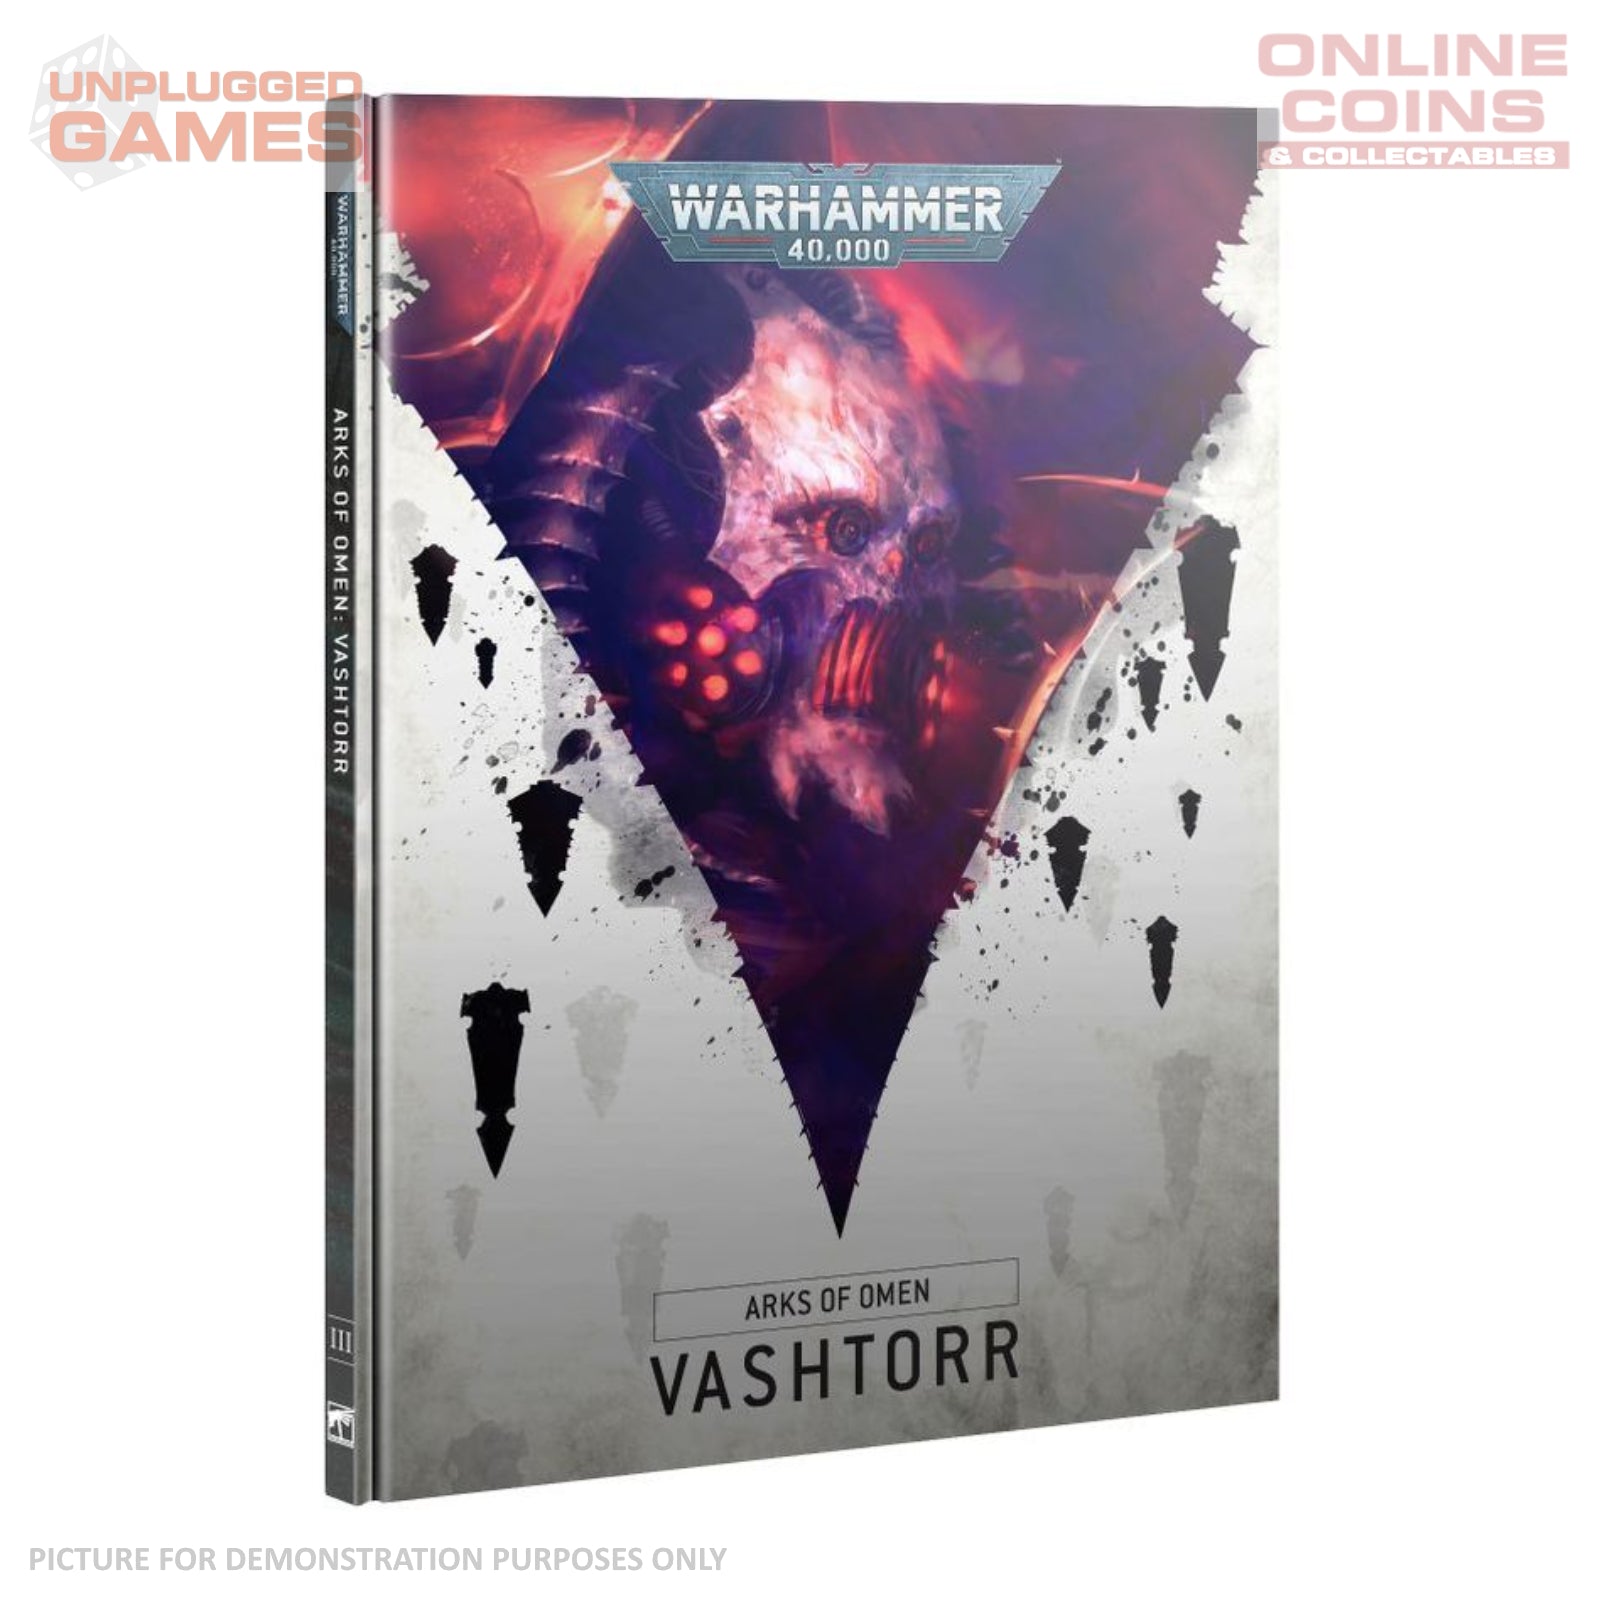 Warhammer 40,000 - Arks of Omen Vashtorr